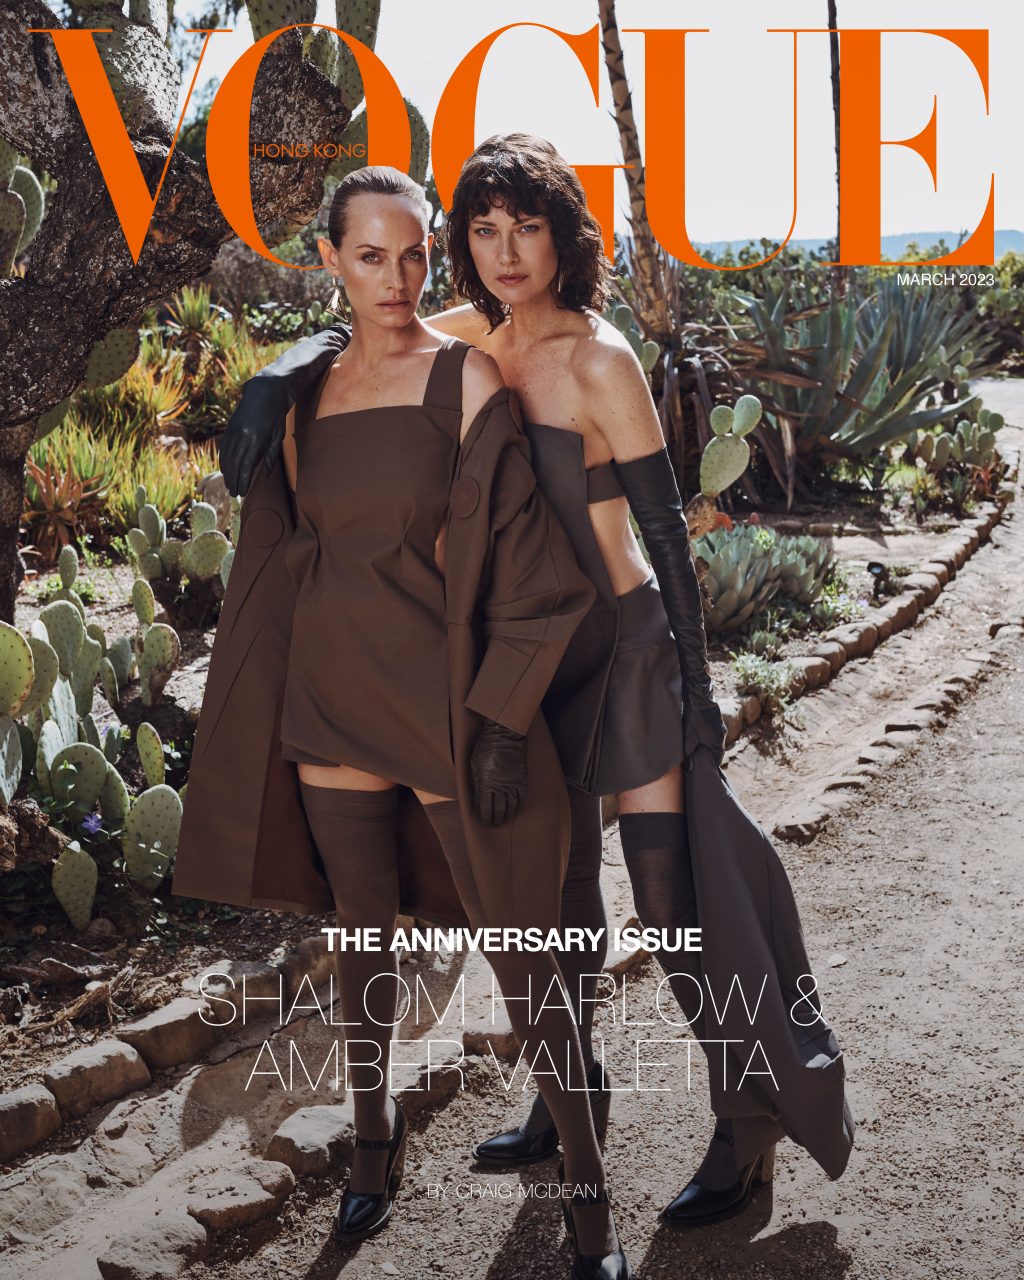 Eileen Gu Stars On Vogue Hong Kong's January Issue